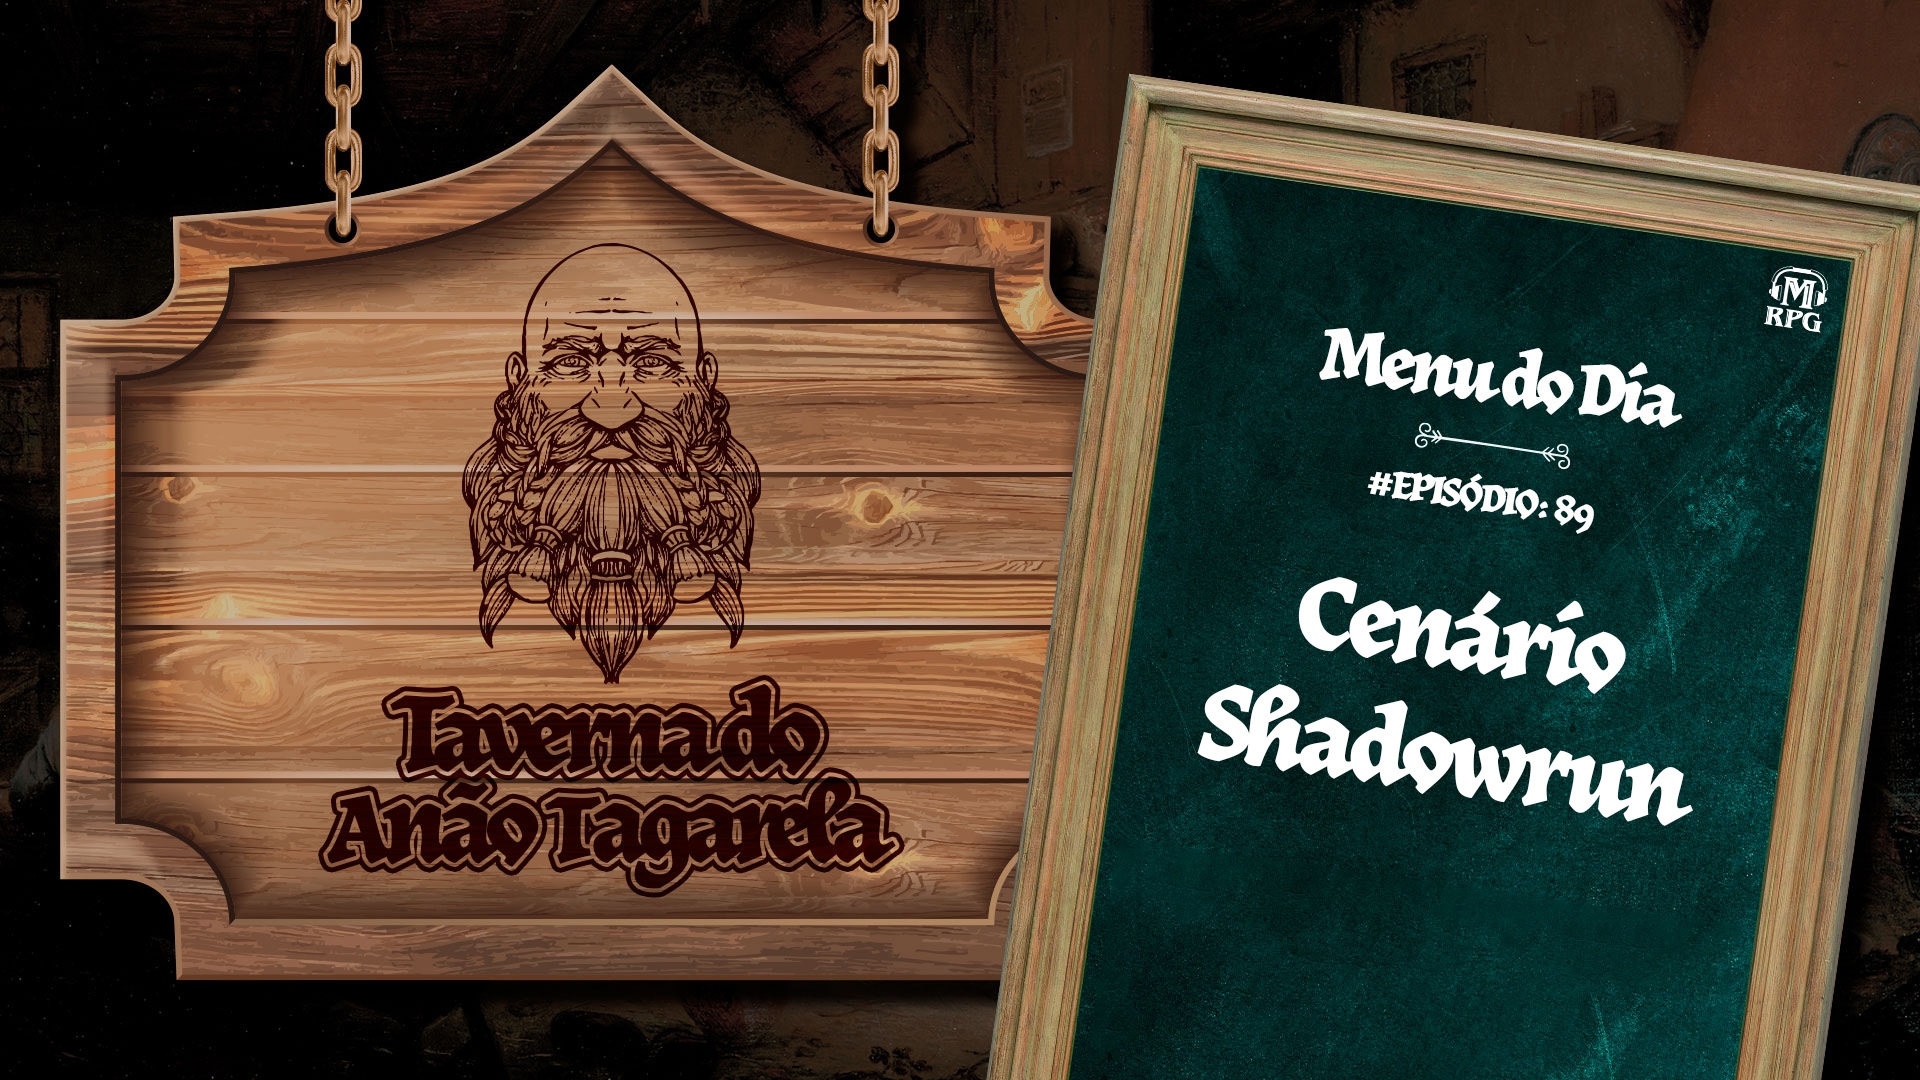 Cenário de Shadowrun – Taverna do Anão Tagarela #89